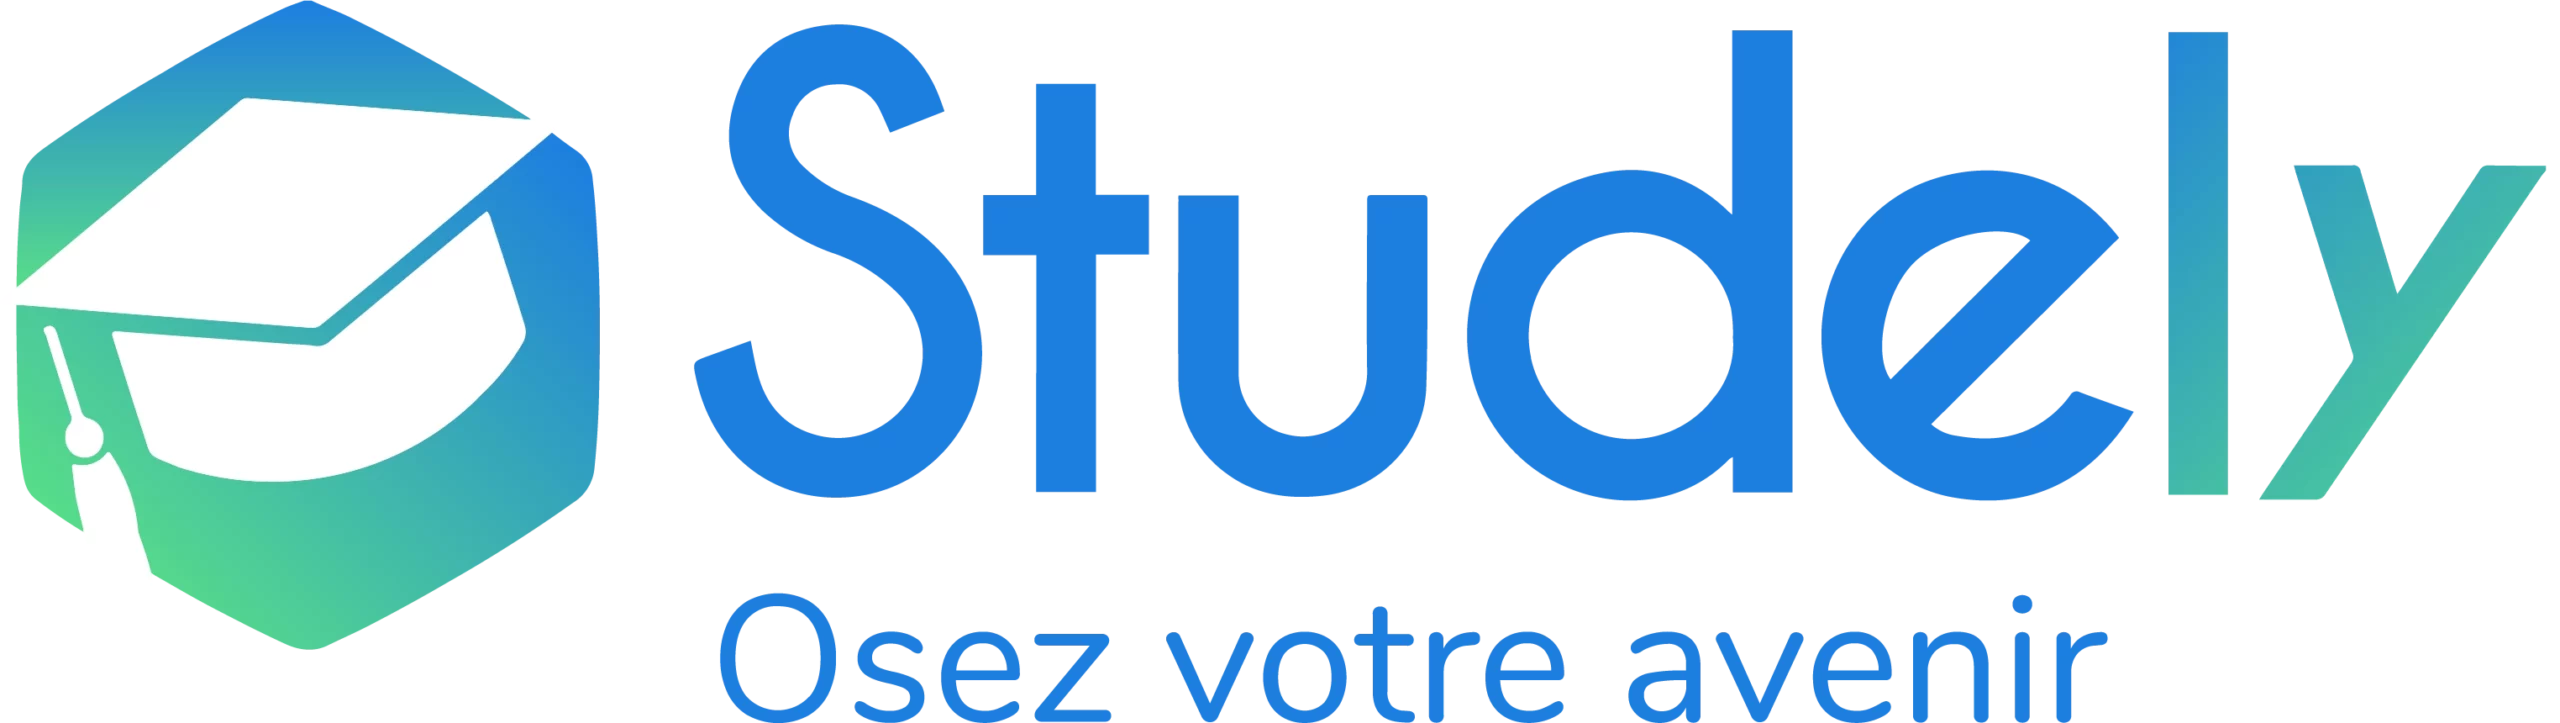 studely_logo_fr.1e81ad9f